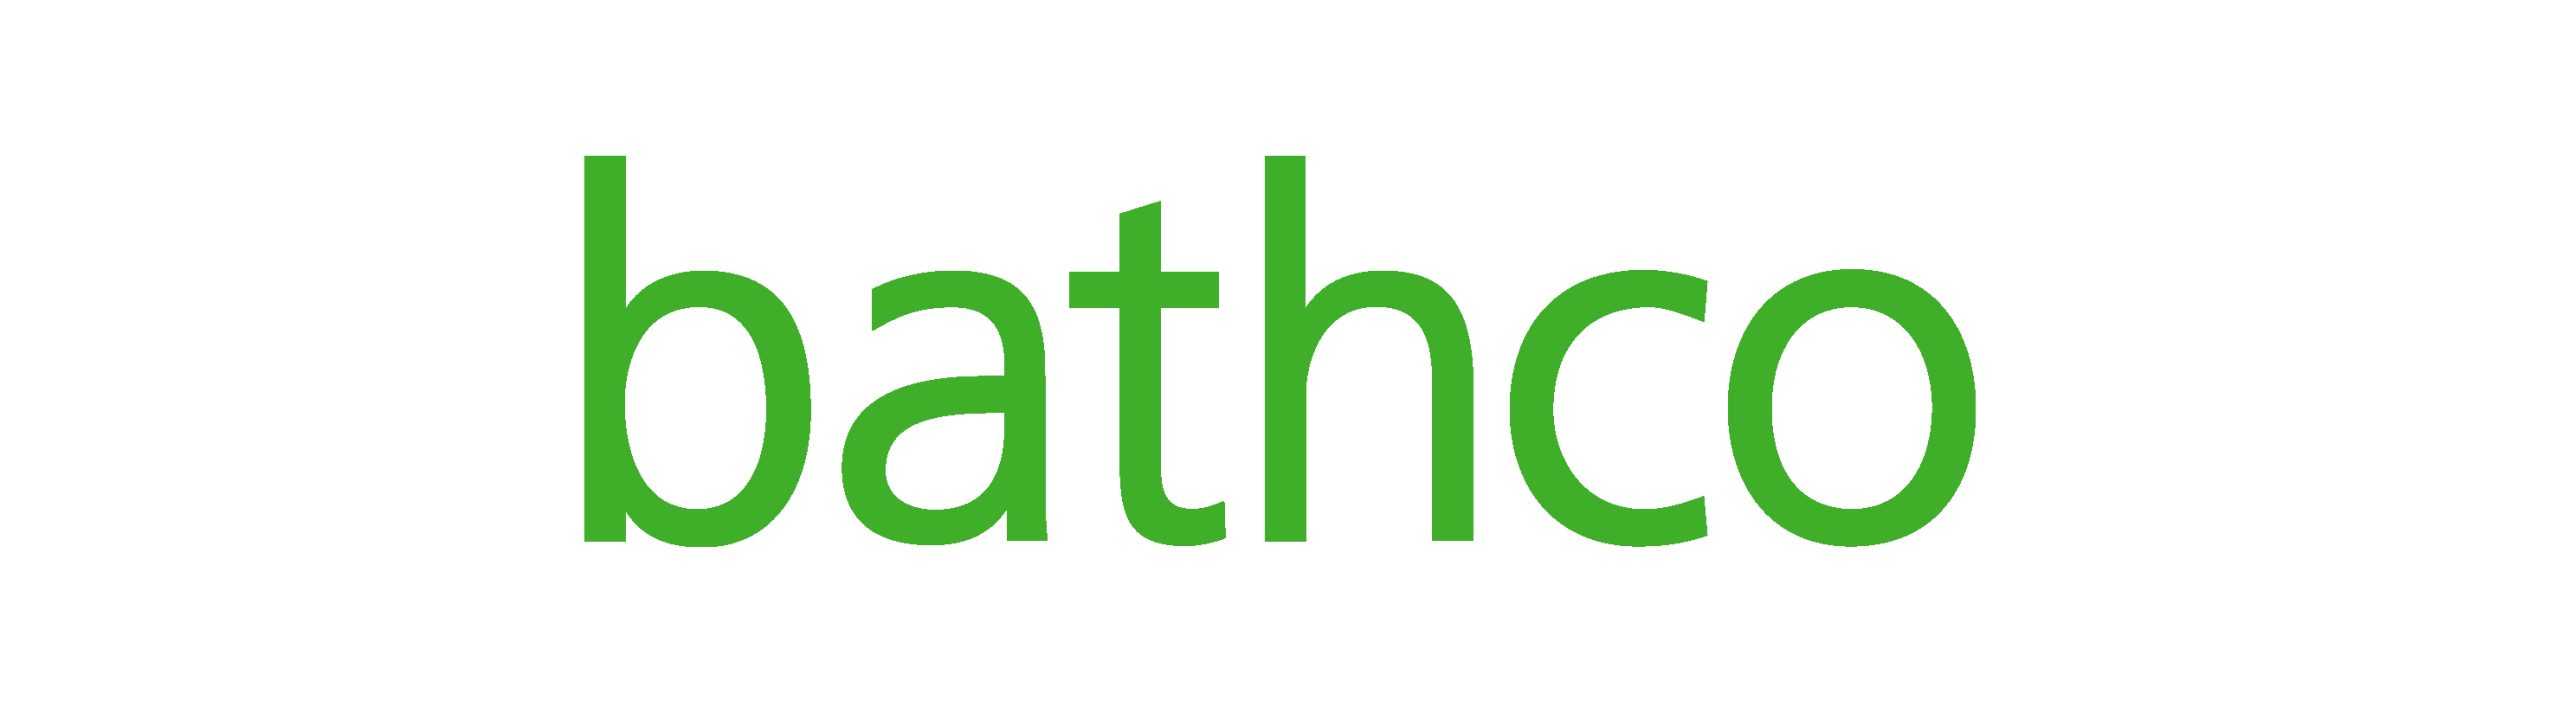 Logo Bathco verde